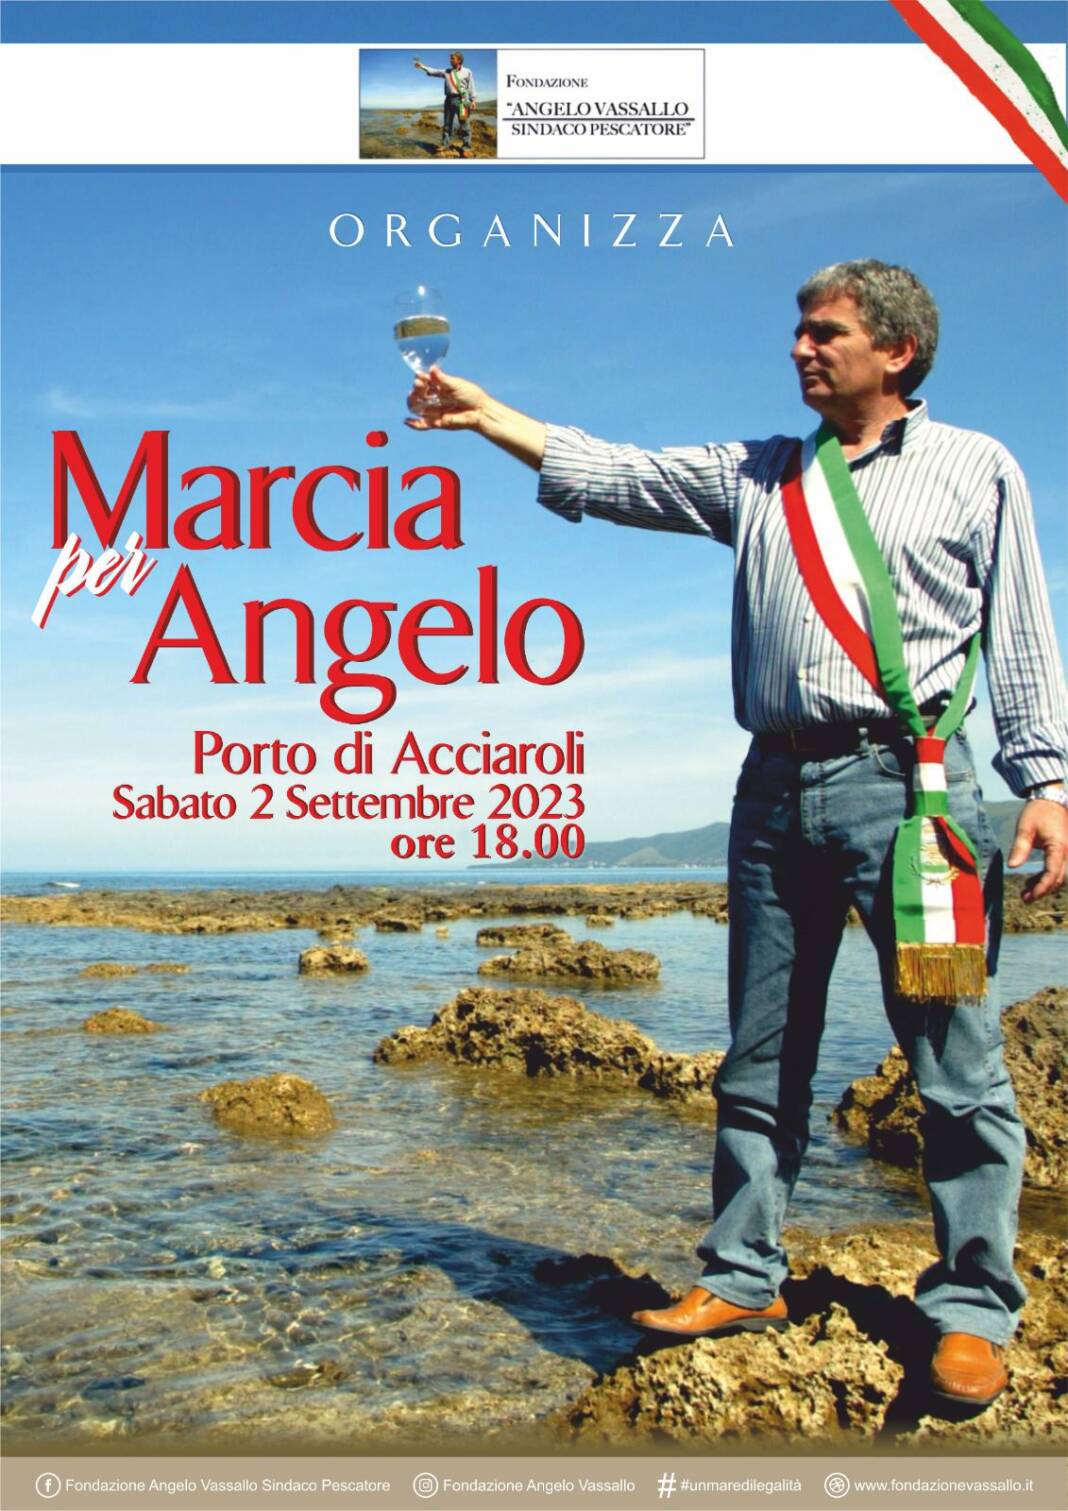 Marcia Angelo Vassallo